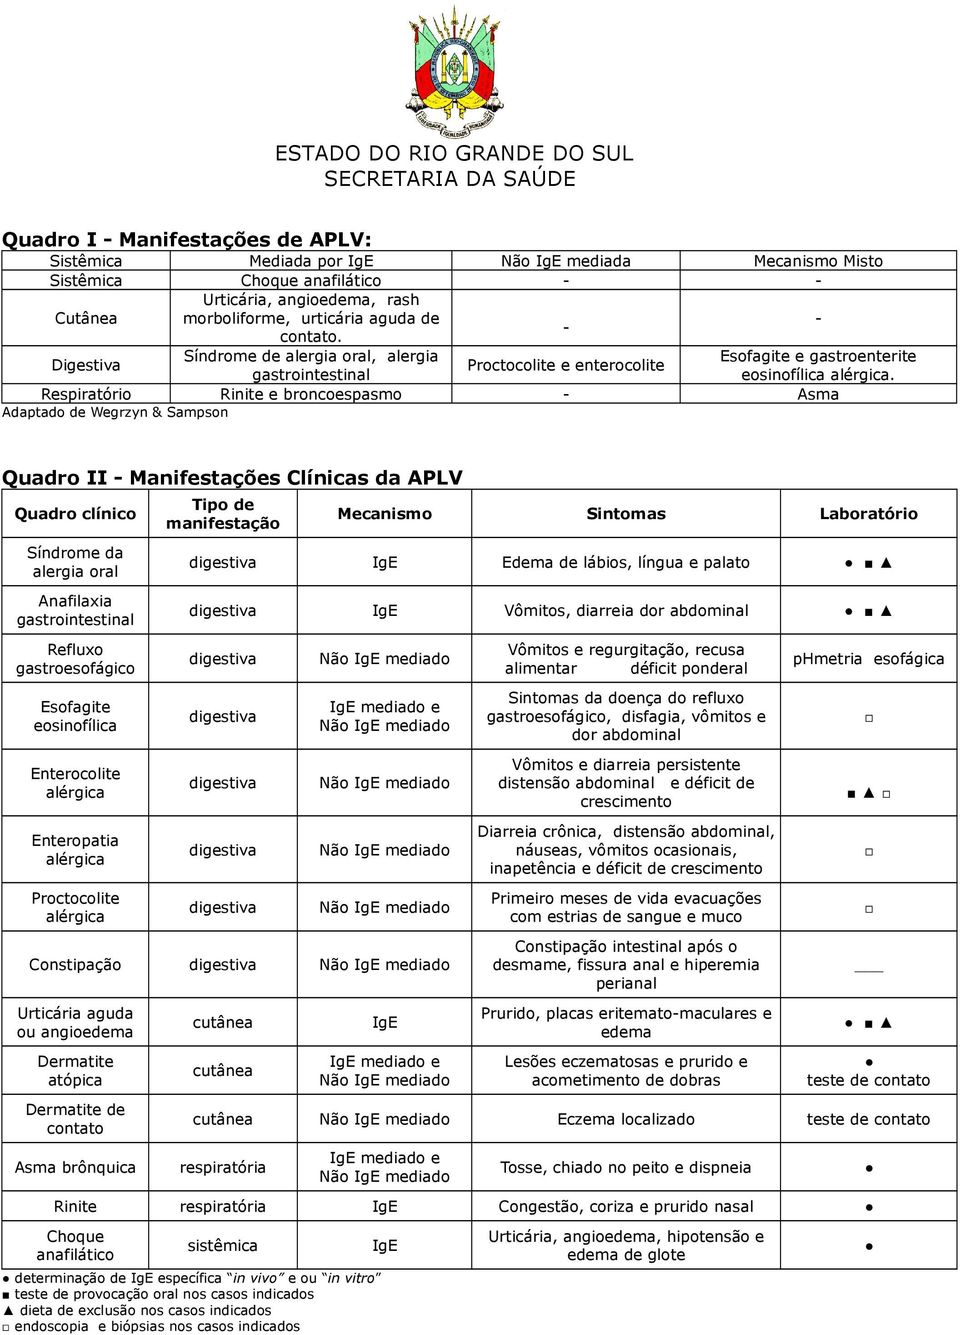 Respiratório Rinite e broncoespasmo - Asma Adaptado de Wegrzyn & Sampson Quadro II - Manifestações Clínicas da APLV Quadro clínico Síndrome da alergia oral Anafilaxia gastrointestinal Refluxo